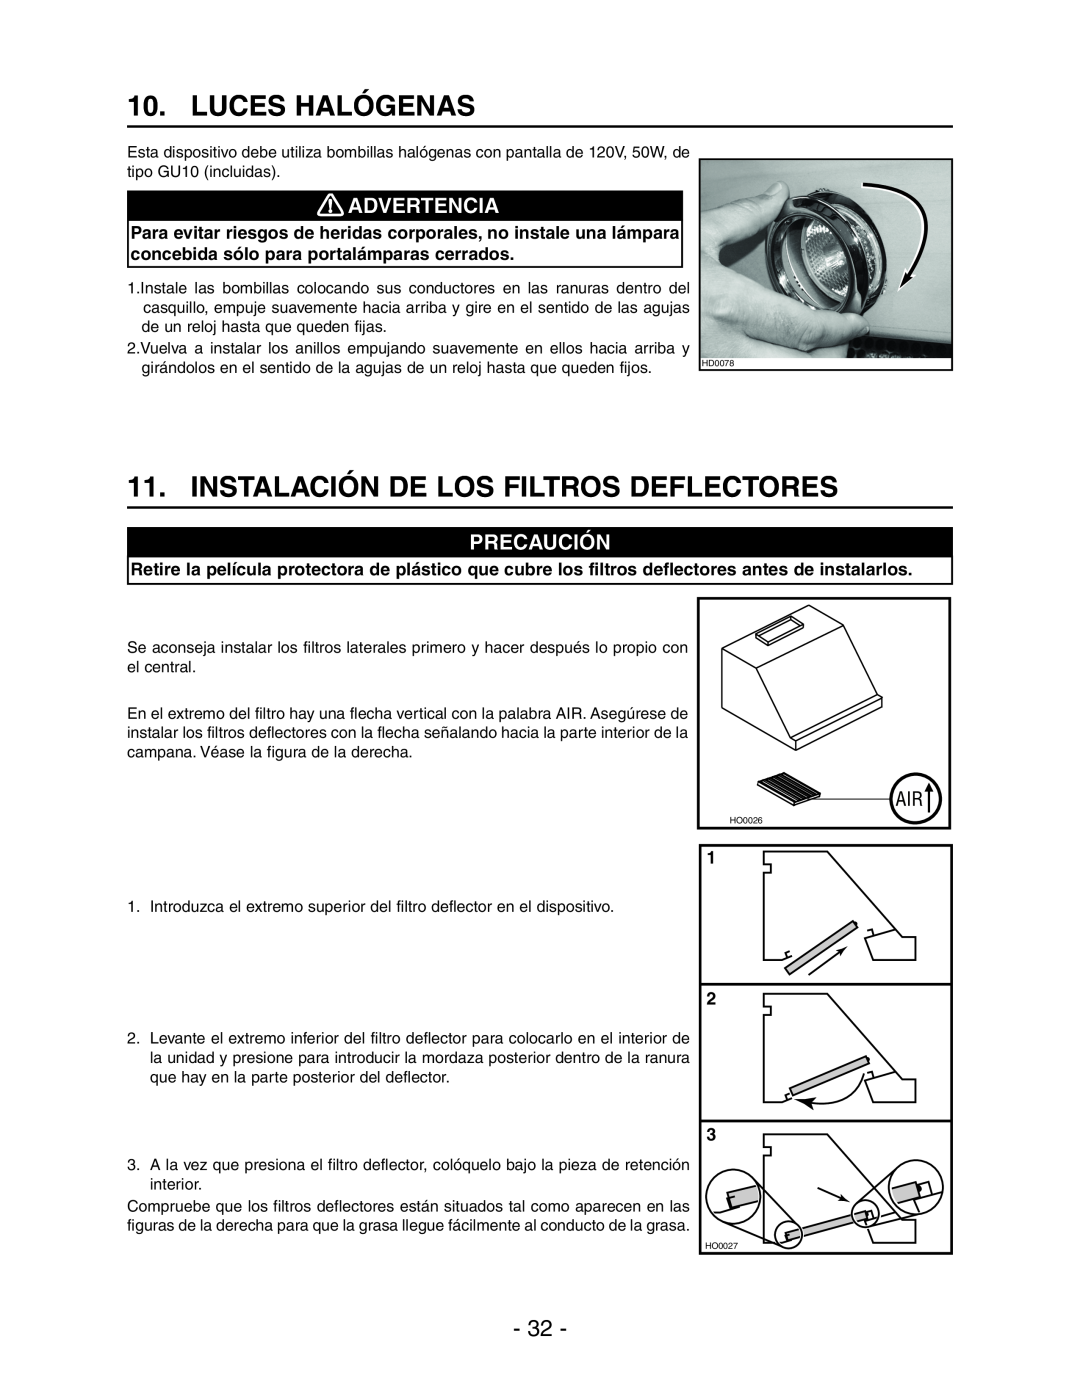 Best WPD28I installation instructions Luces Halógenas, Instalación De Los Filtros Deflectores, Advertencia, Precaución 